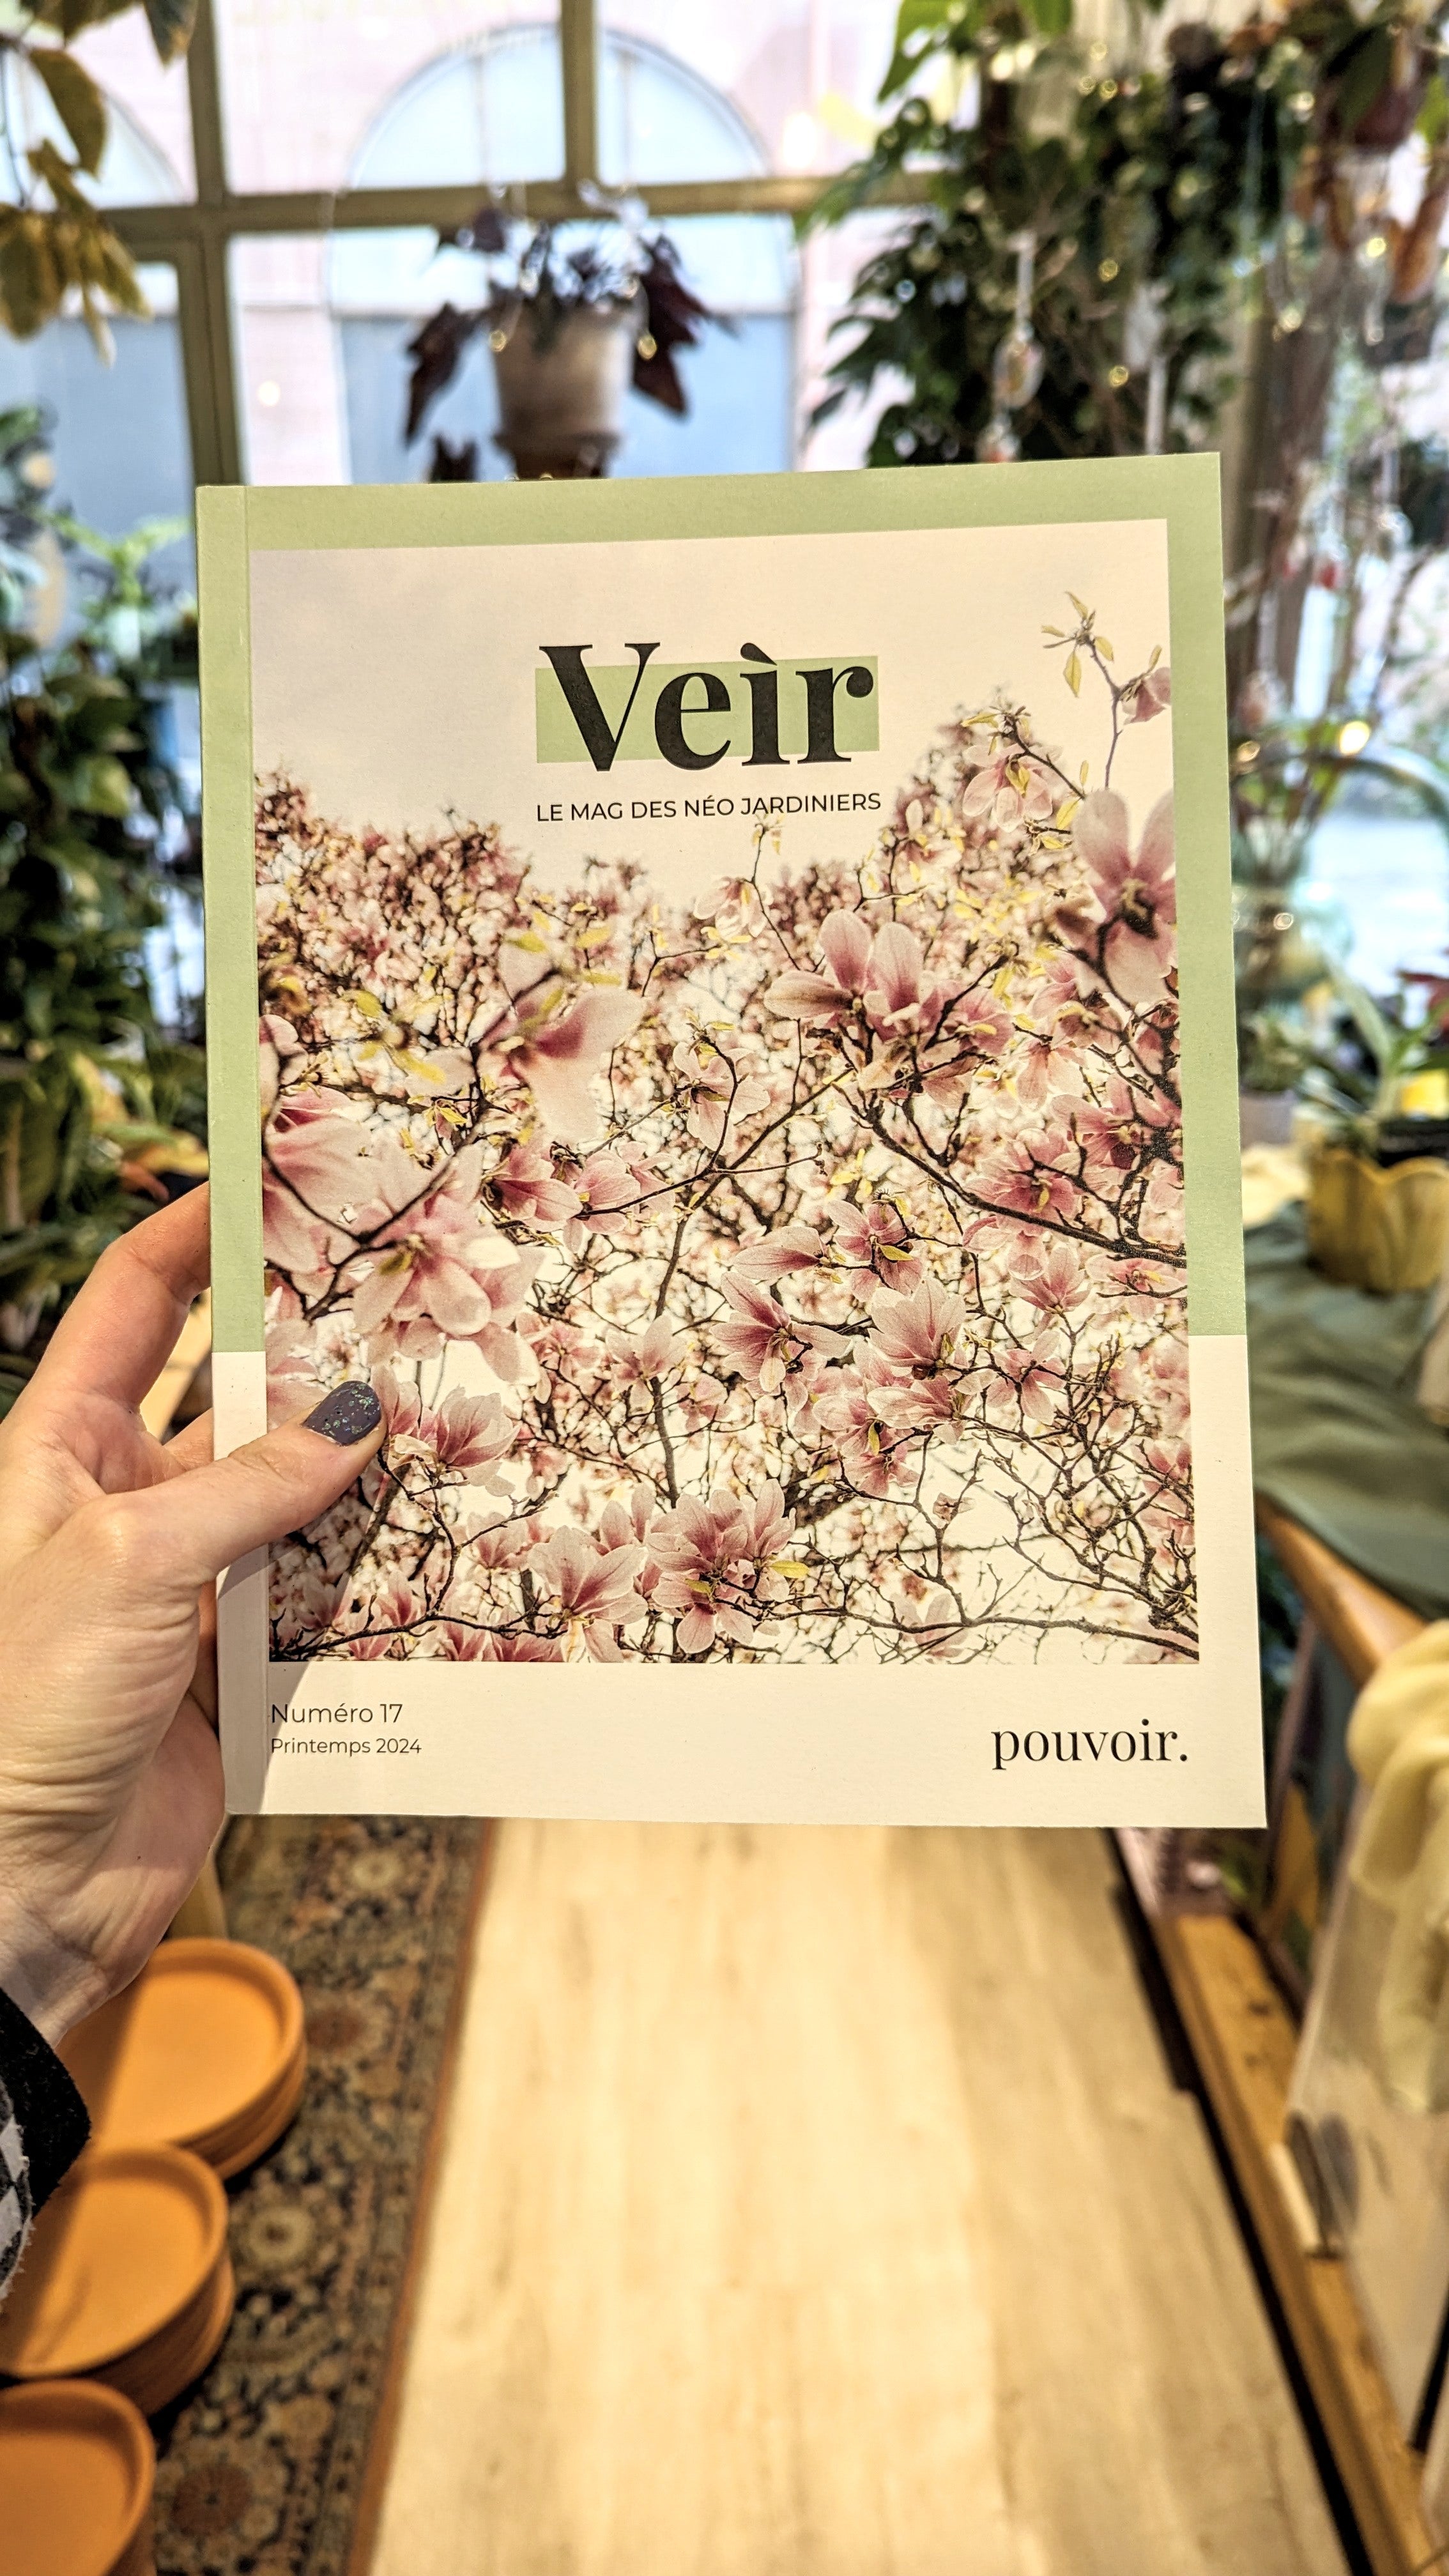 Veir magazine | Numéro 17 - Printemps 2024 : Pouvoir.